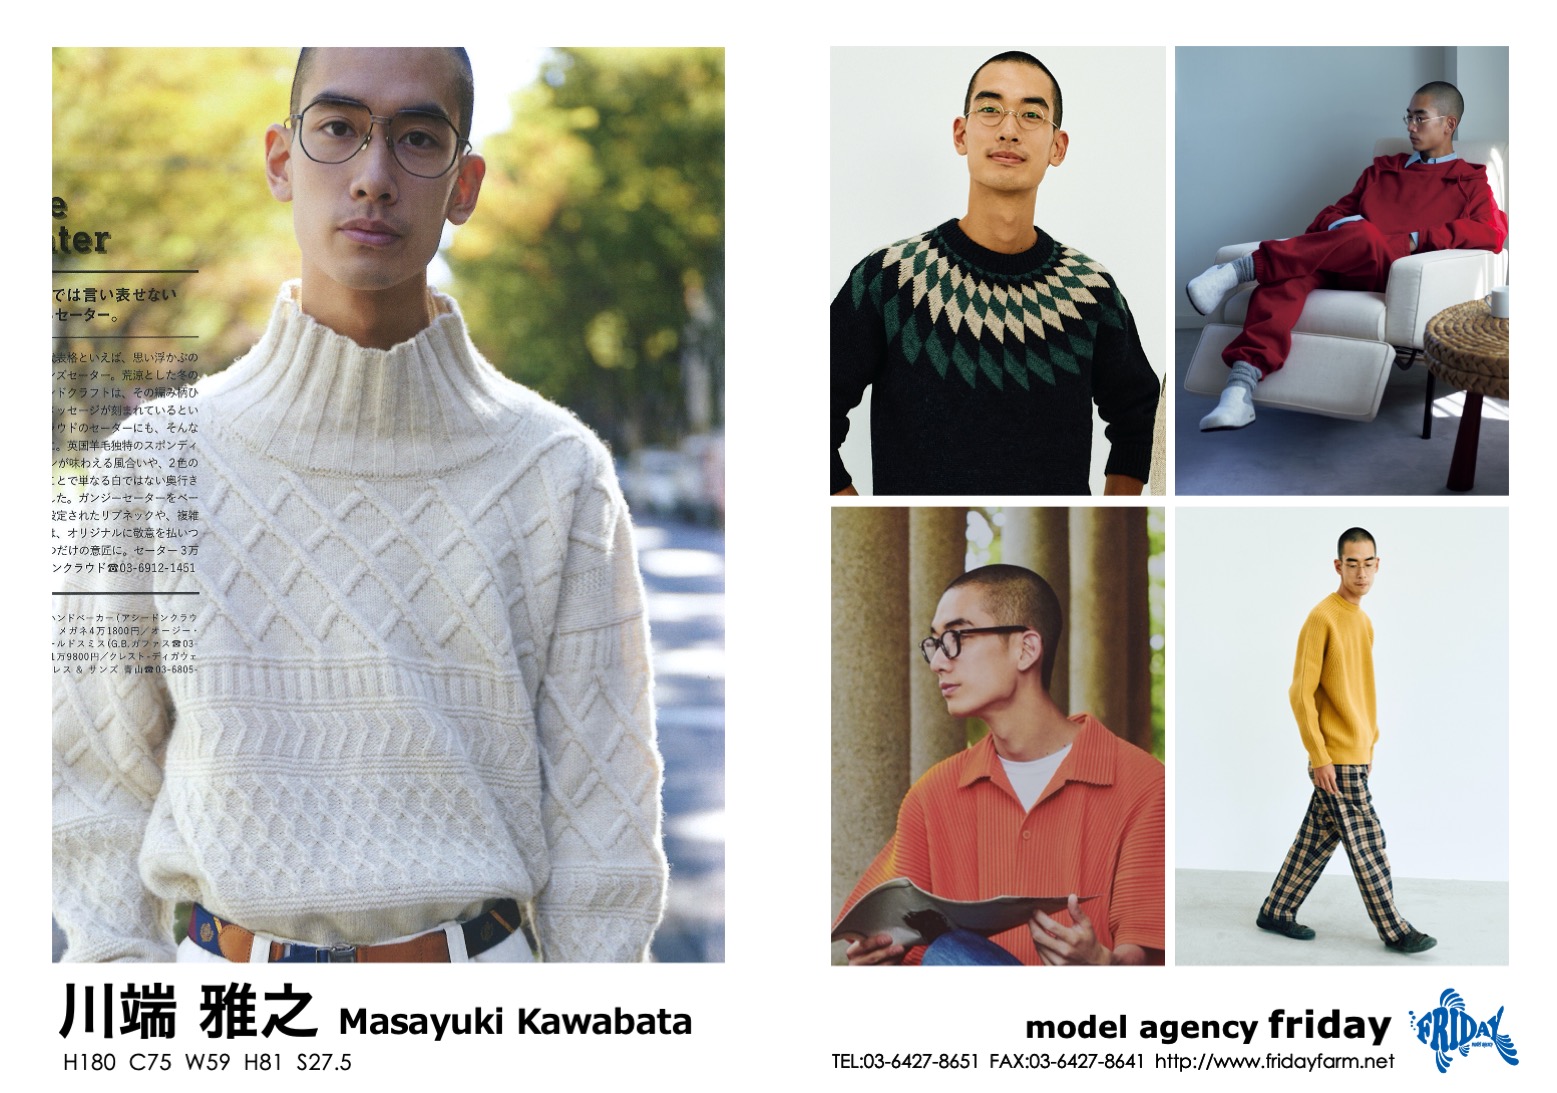 川端 雅之 - Masayuki Kawabata | model agency friday